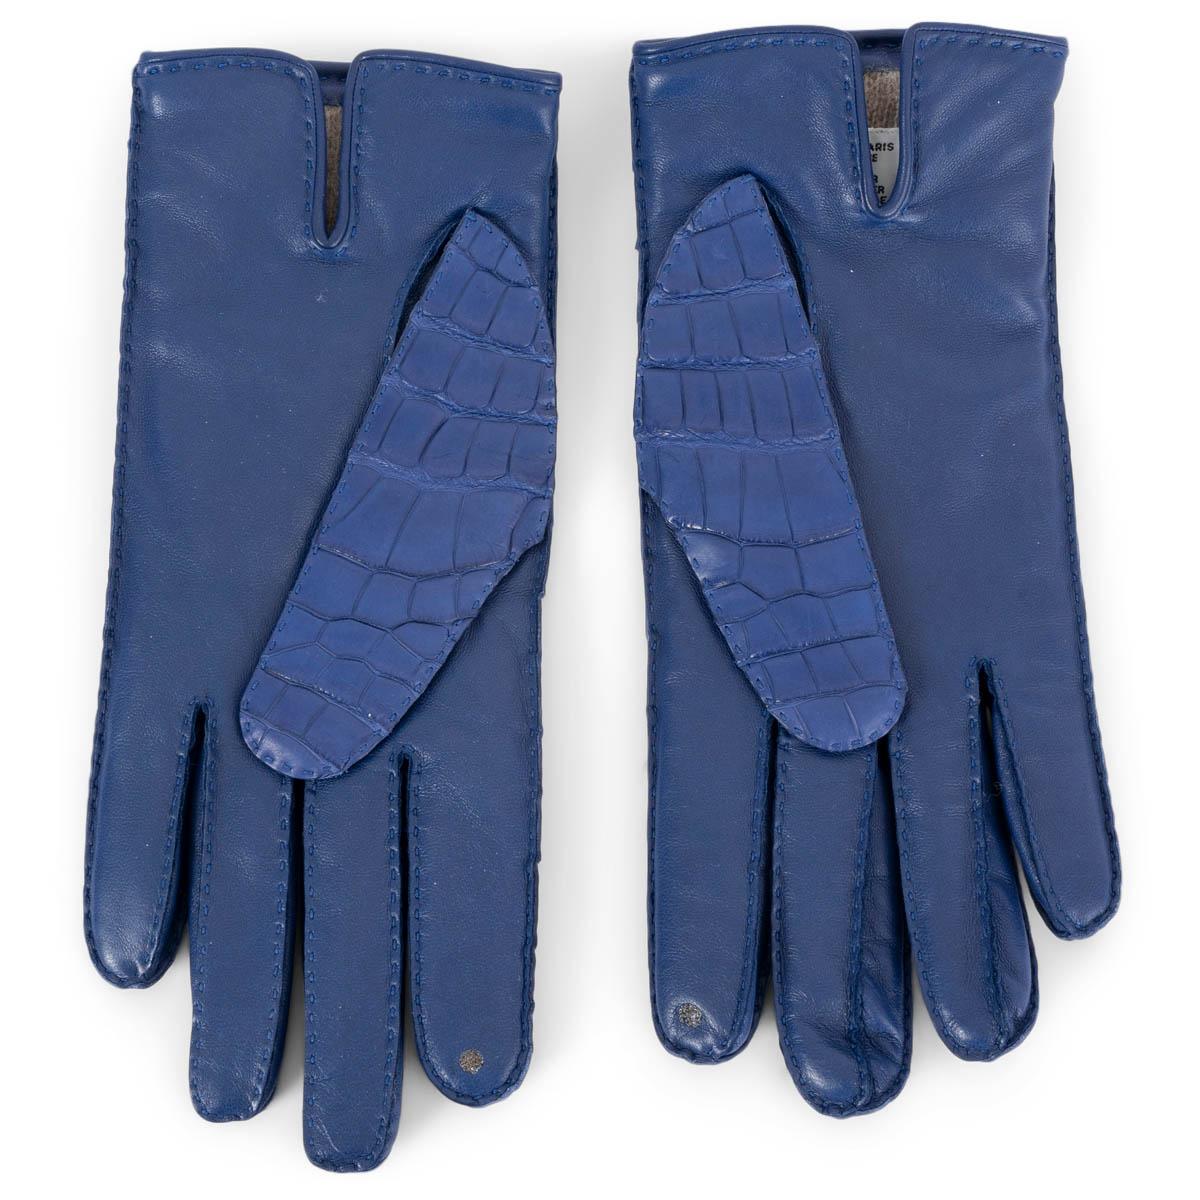 100% authentische Hermès Soya Kelly Lock Handschuhe in Bleu Electrique blauem mattem Alligator. Mit Smartphone-kompatiblem Zeigefinger und taupefarbenem Kaschmirfutter (100%). Sie wurden getragen und sind in ausgezeichnetem Zustand.